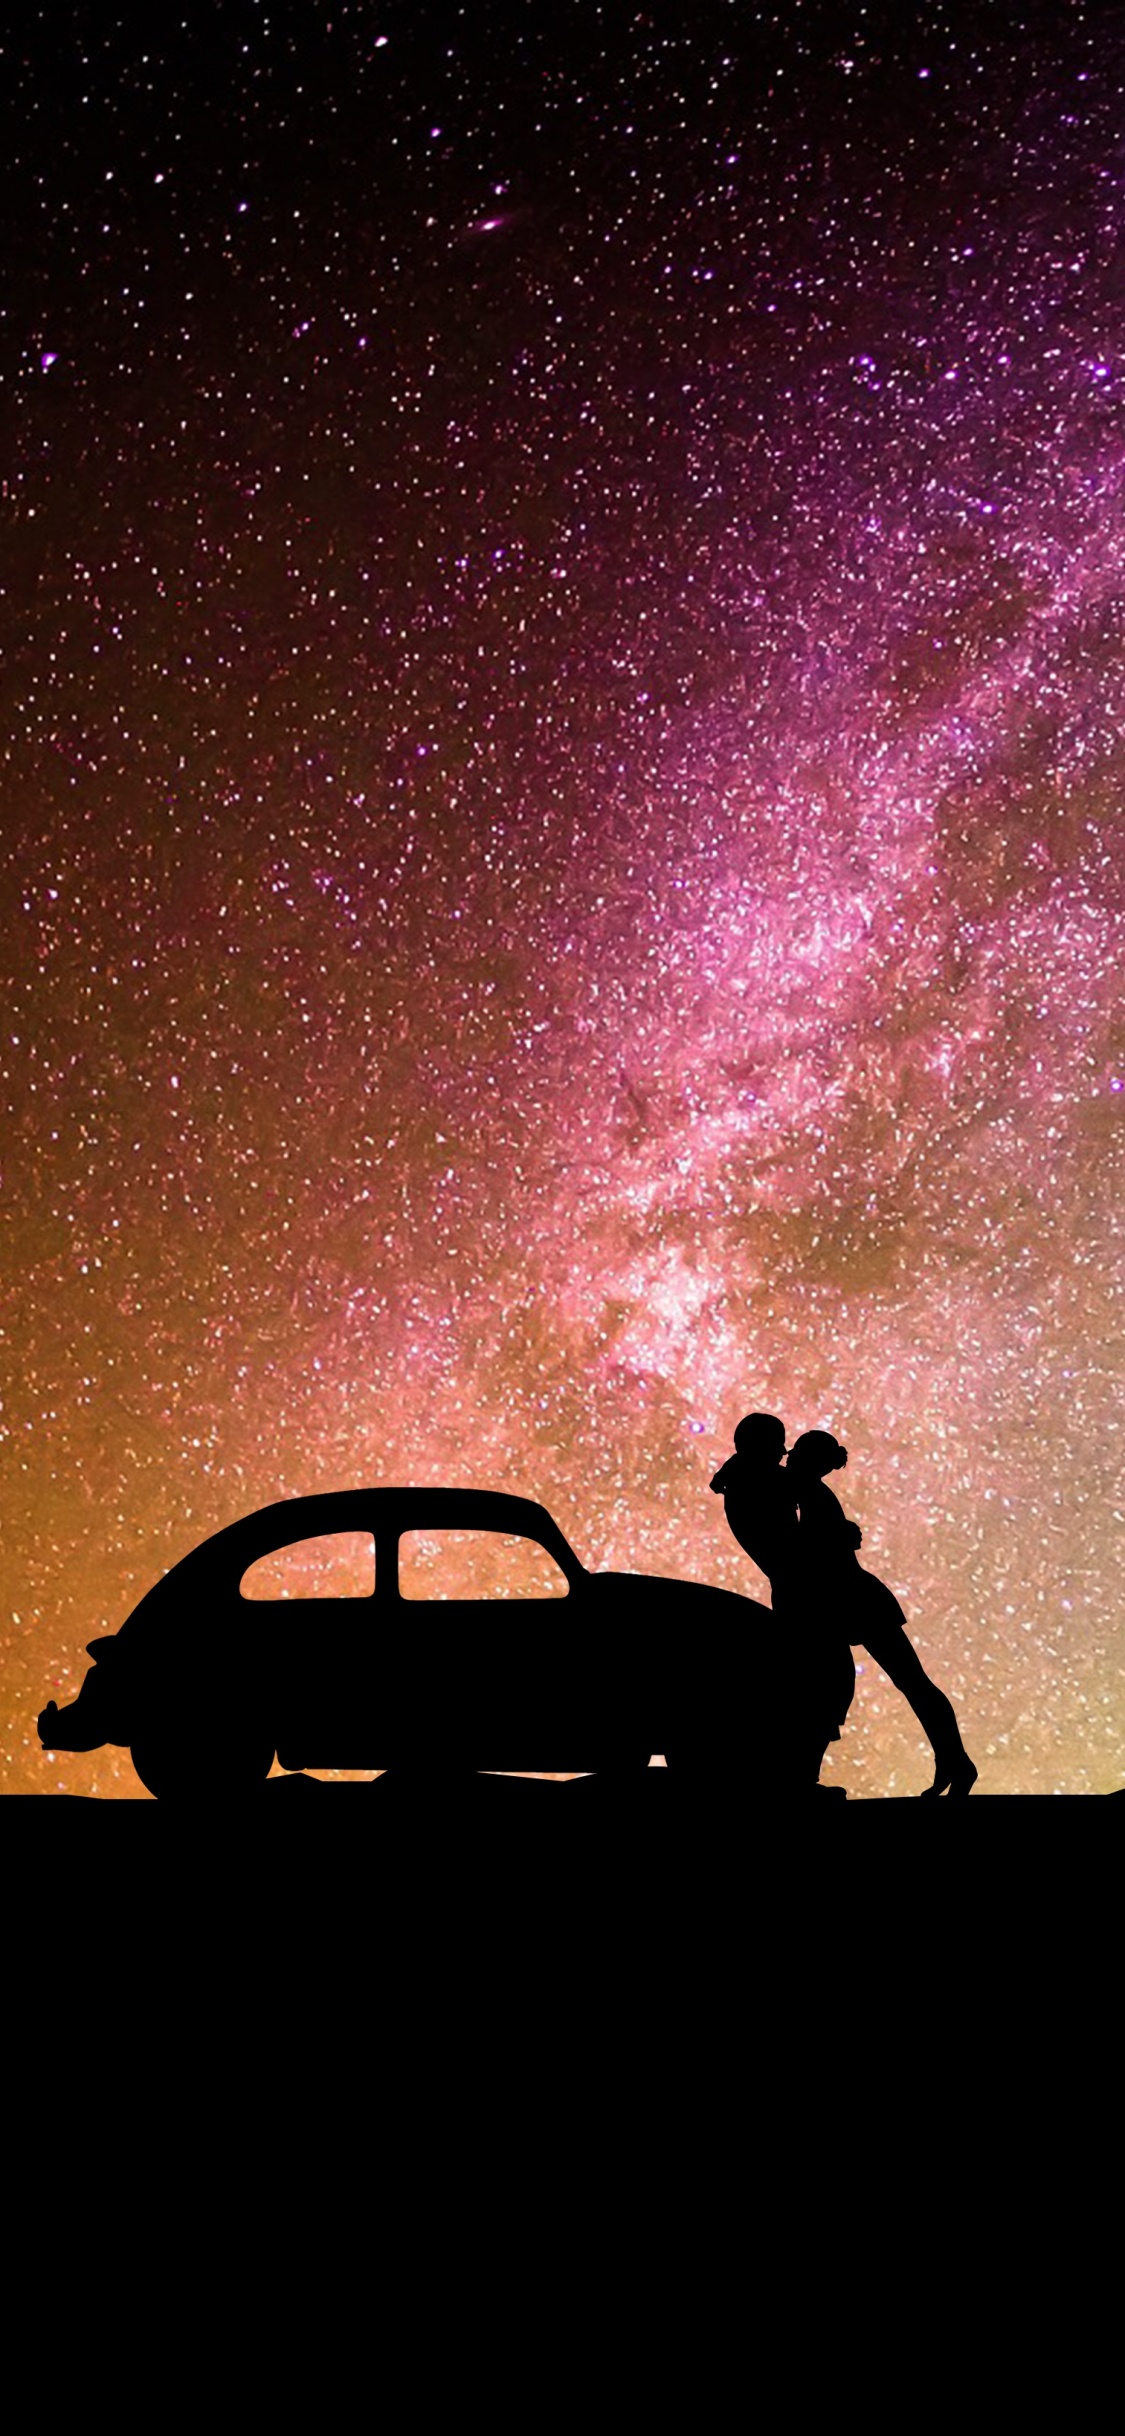 Spotify, Objeto Astronómico, la Astronomía, Estrella, Espacio. Wallpaper in 1125x2436 Resolution